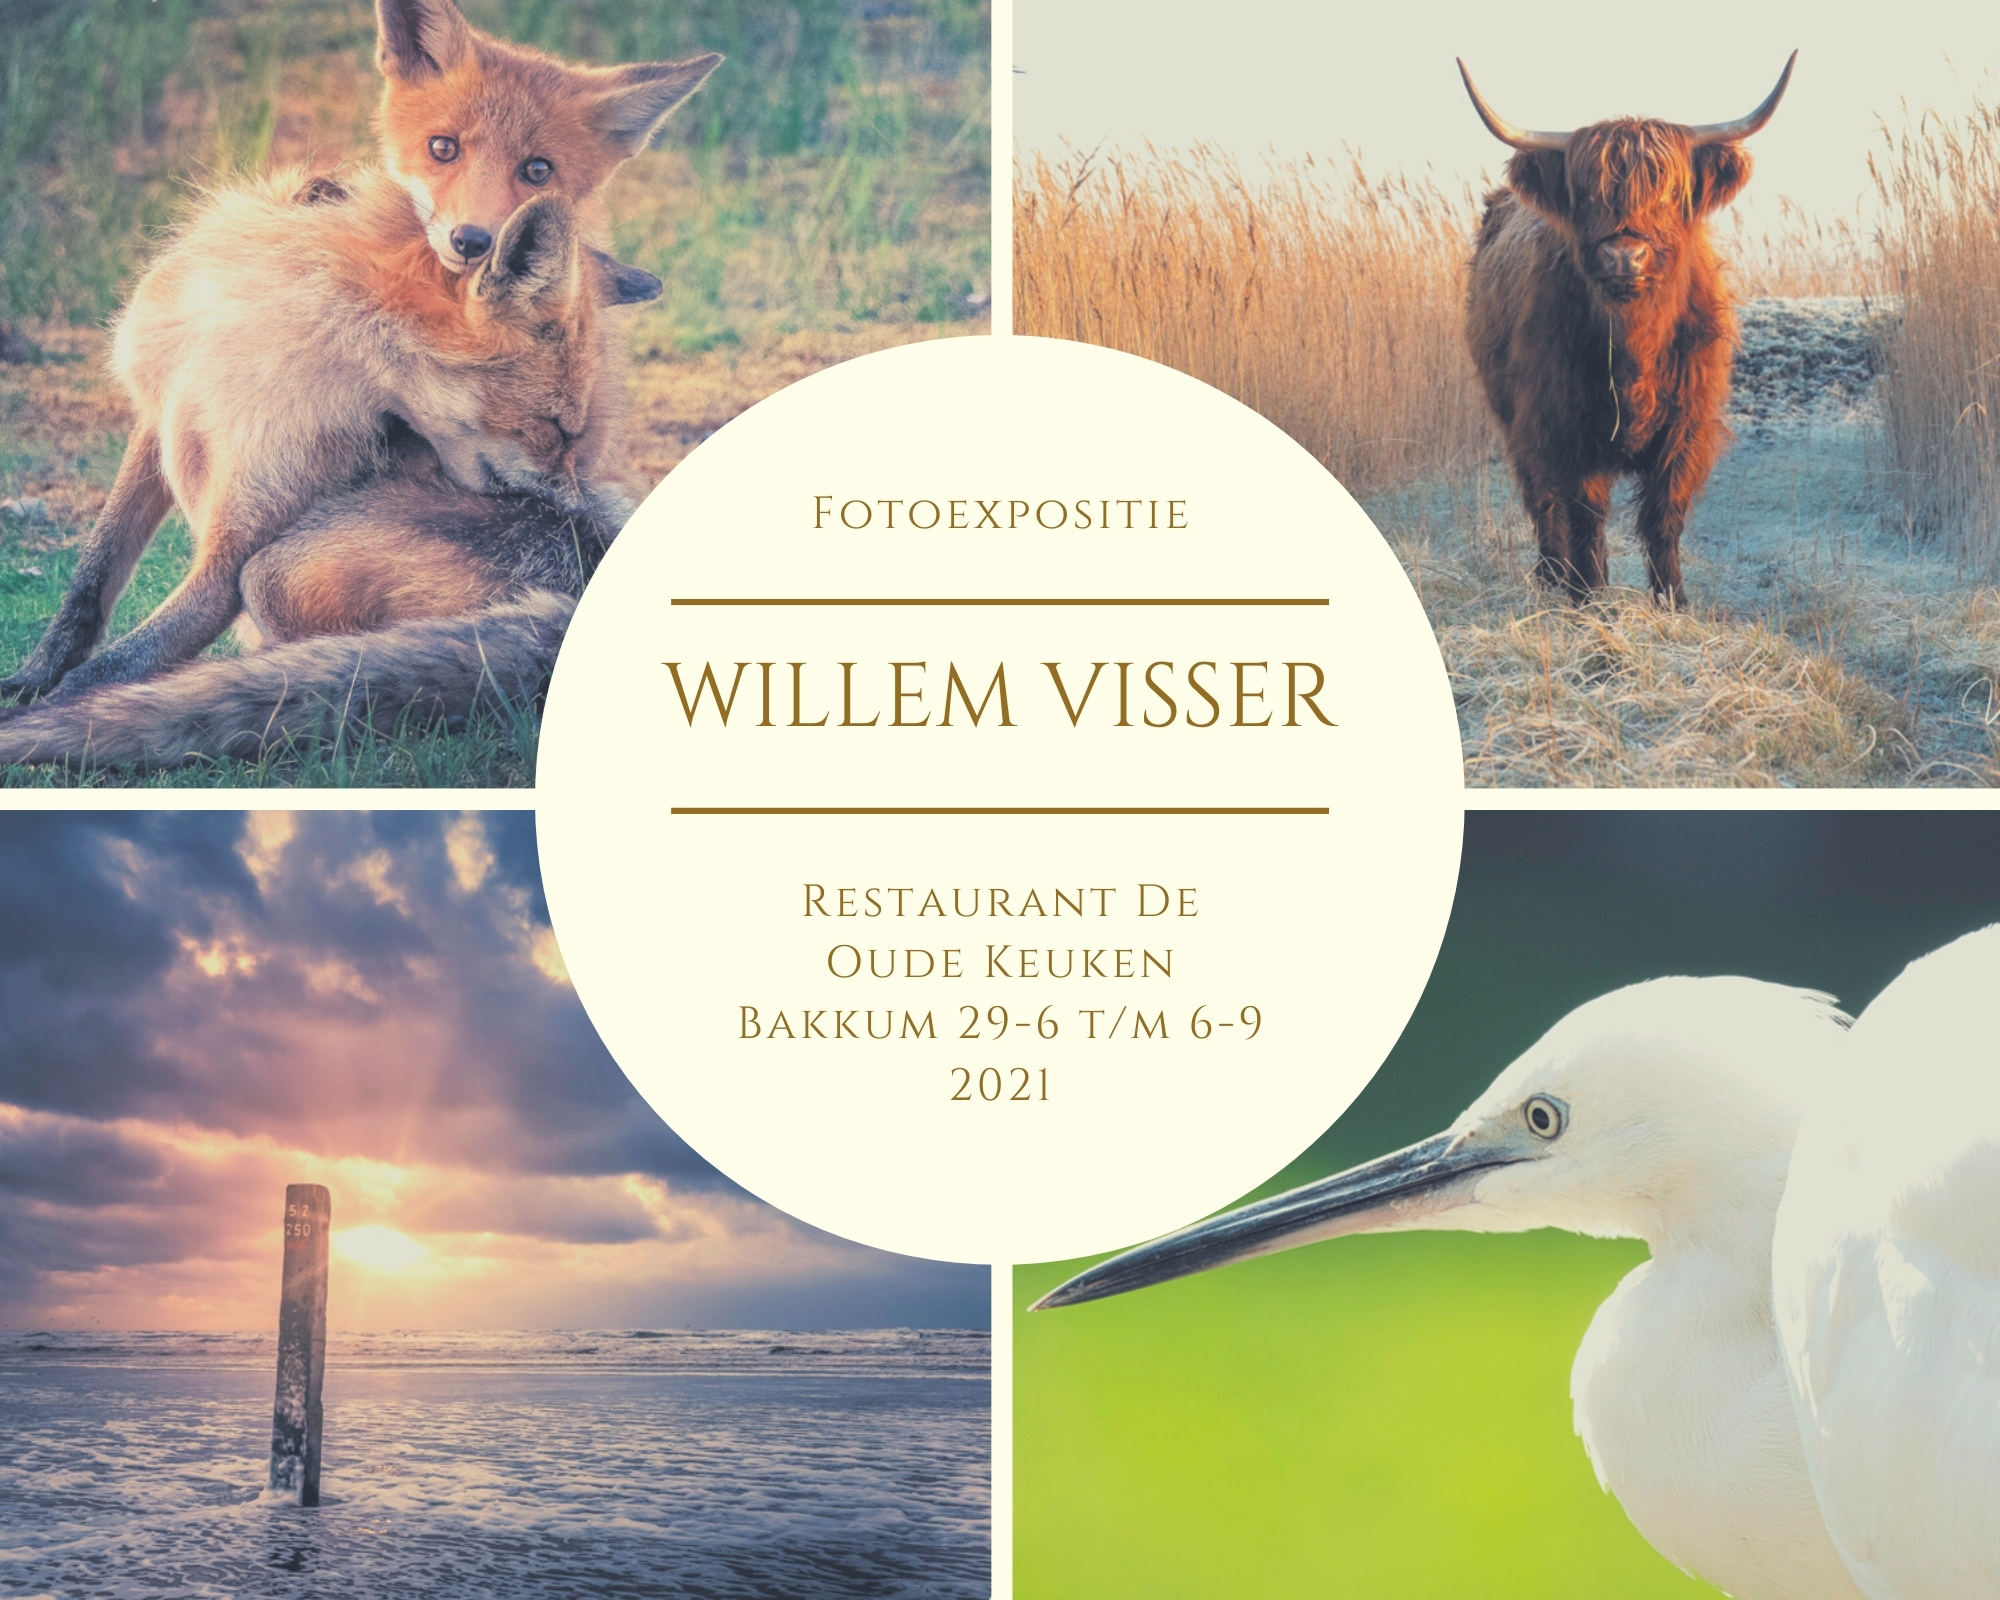 Fotoexpositie Willem Visser